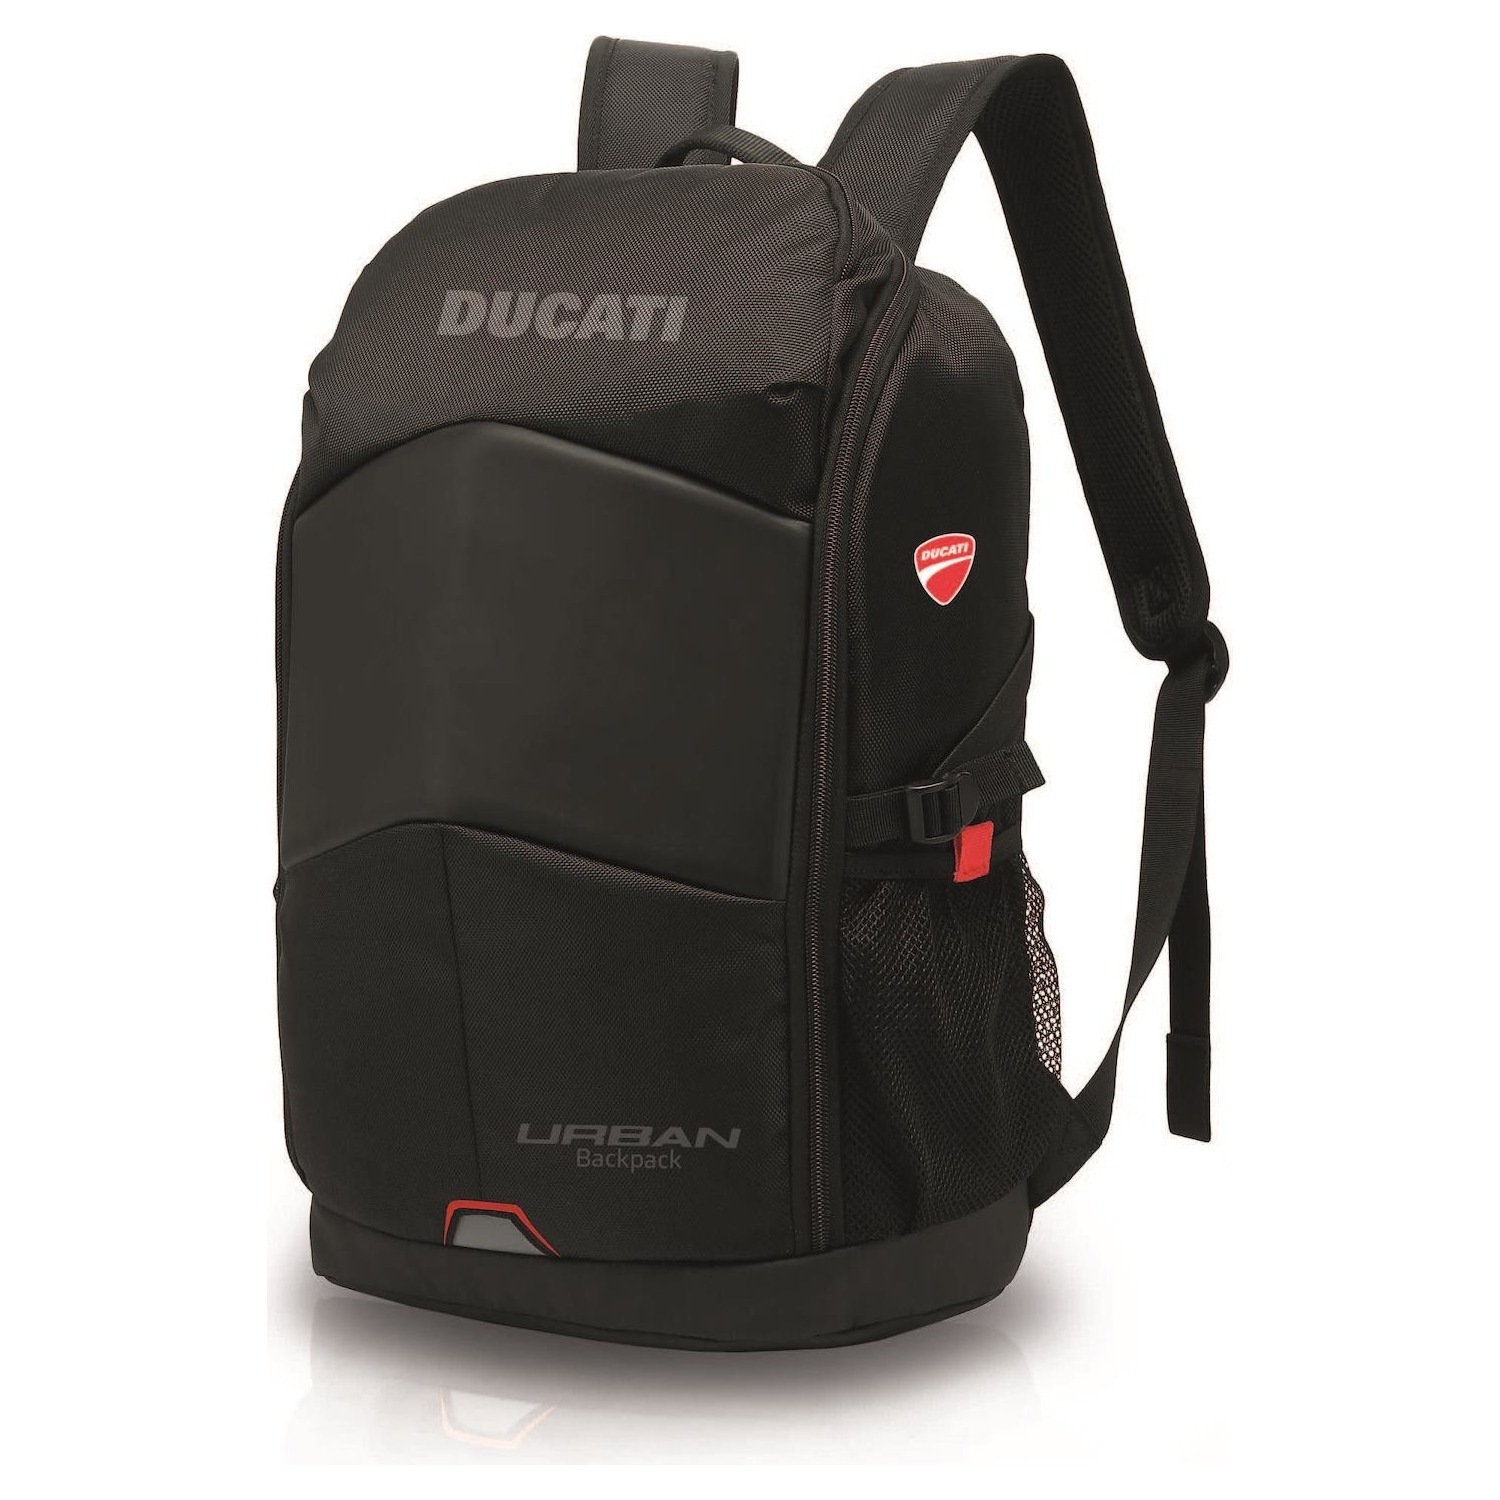 Immagine per Ducati Backpack Waterproof (Zaino impermeabile) da DIMOStore